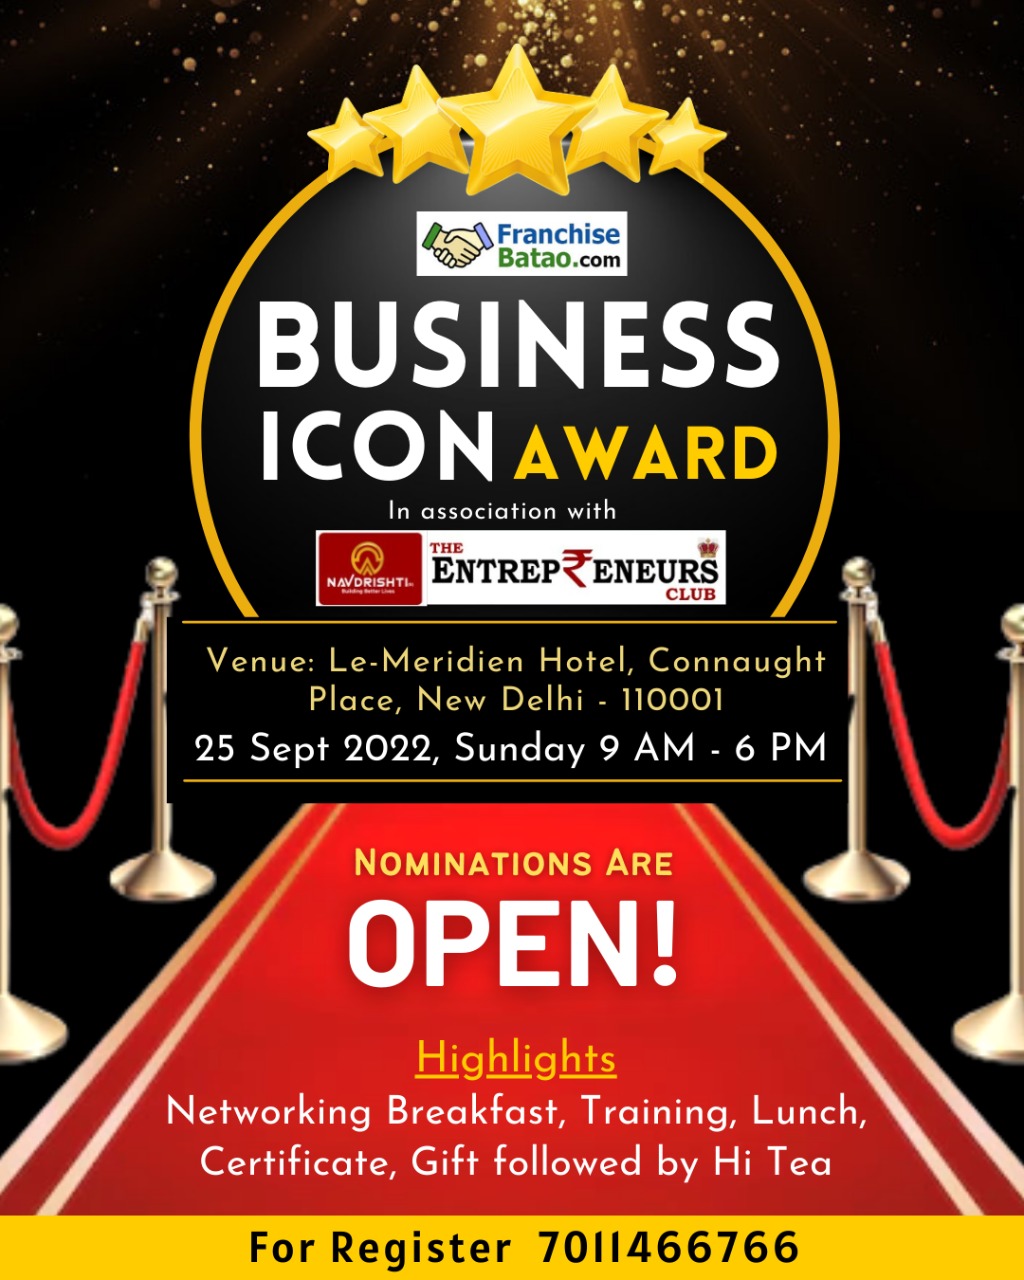 Franchise batao business icon award, New Delhi, Delhi, India